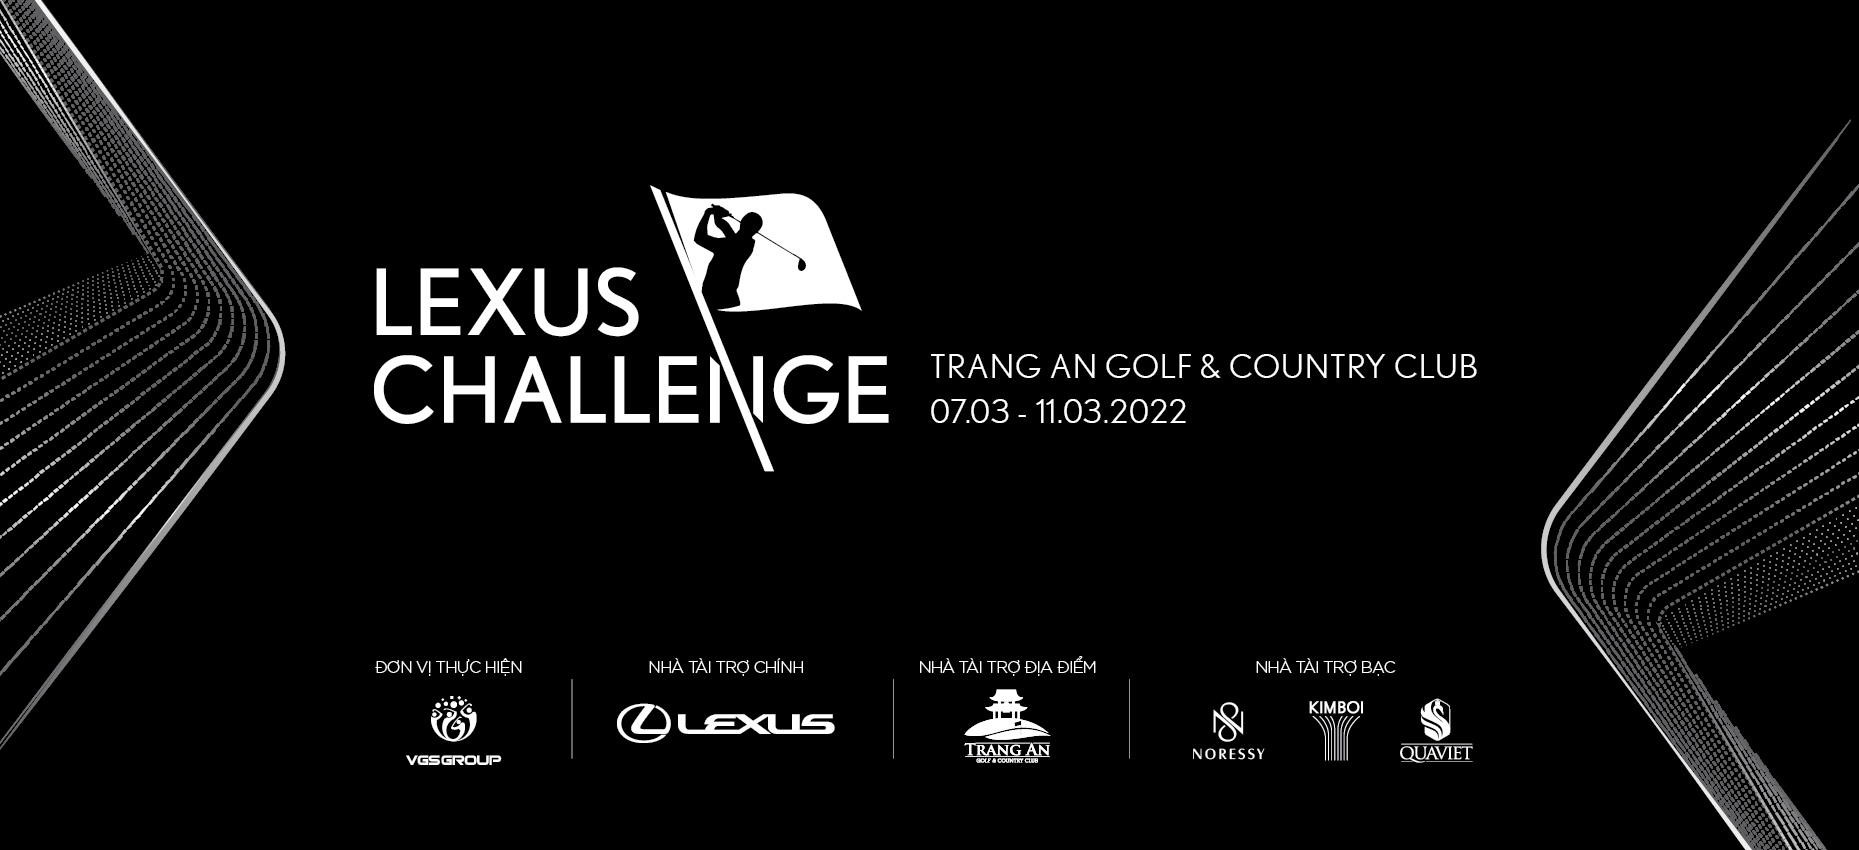 Lexus Challenge 2022 hấp dẫn với tổng giải thưởng lên tới 1,6 tỷ đồng